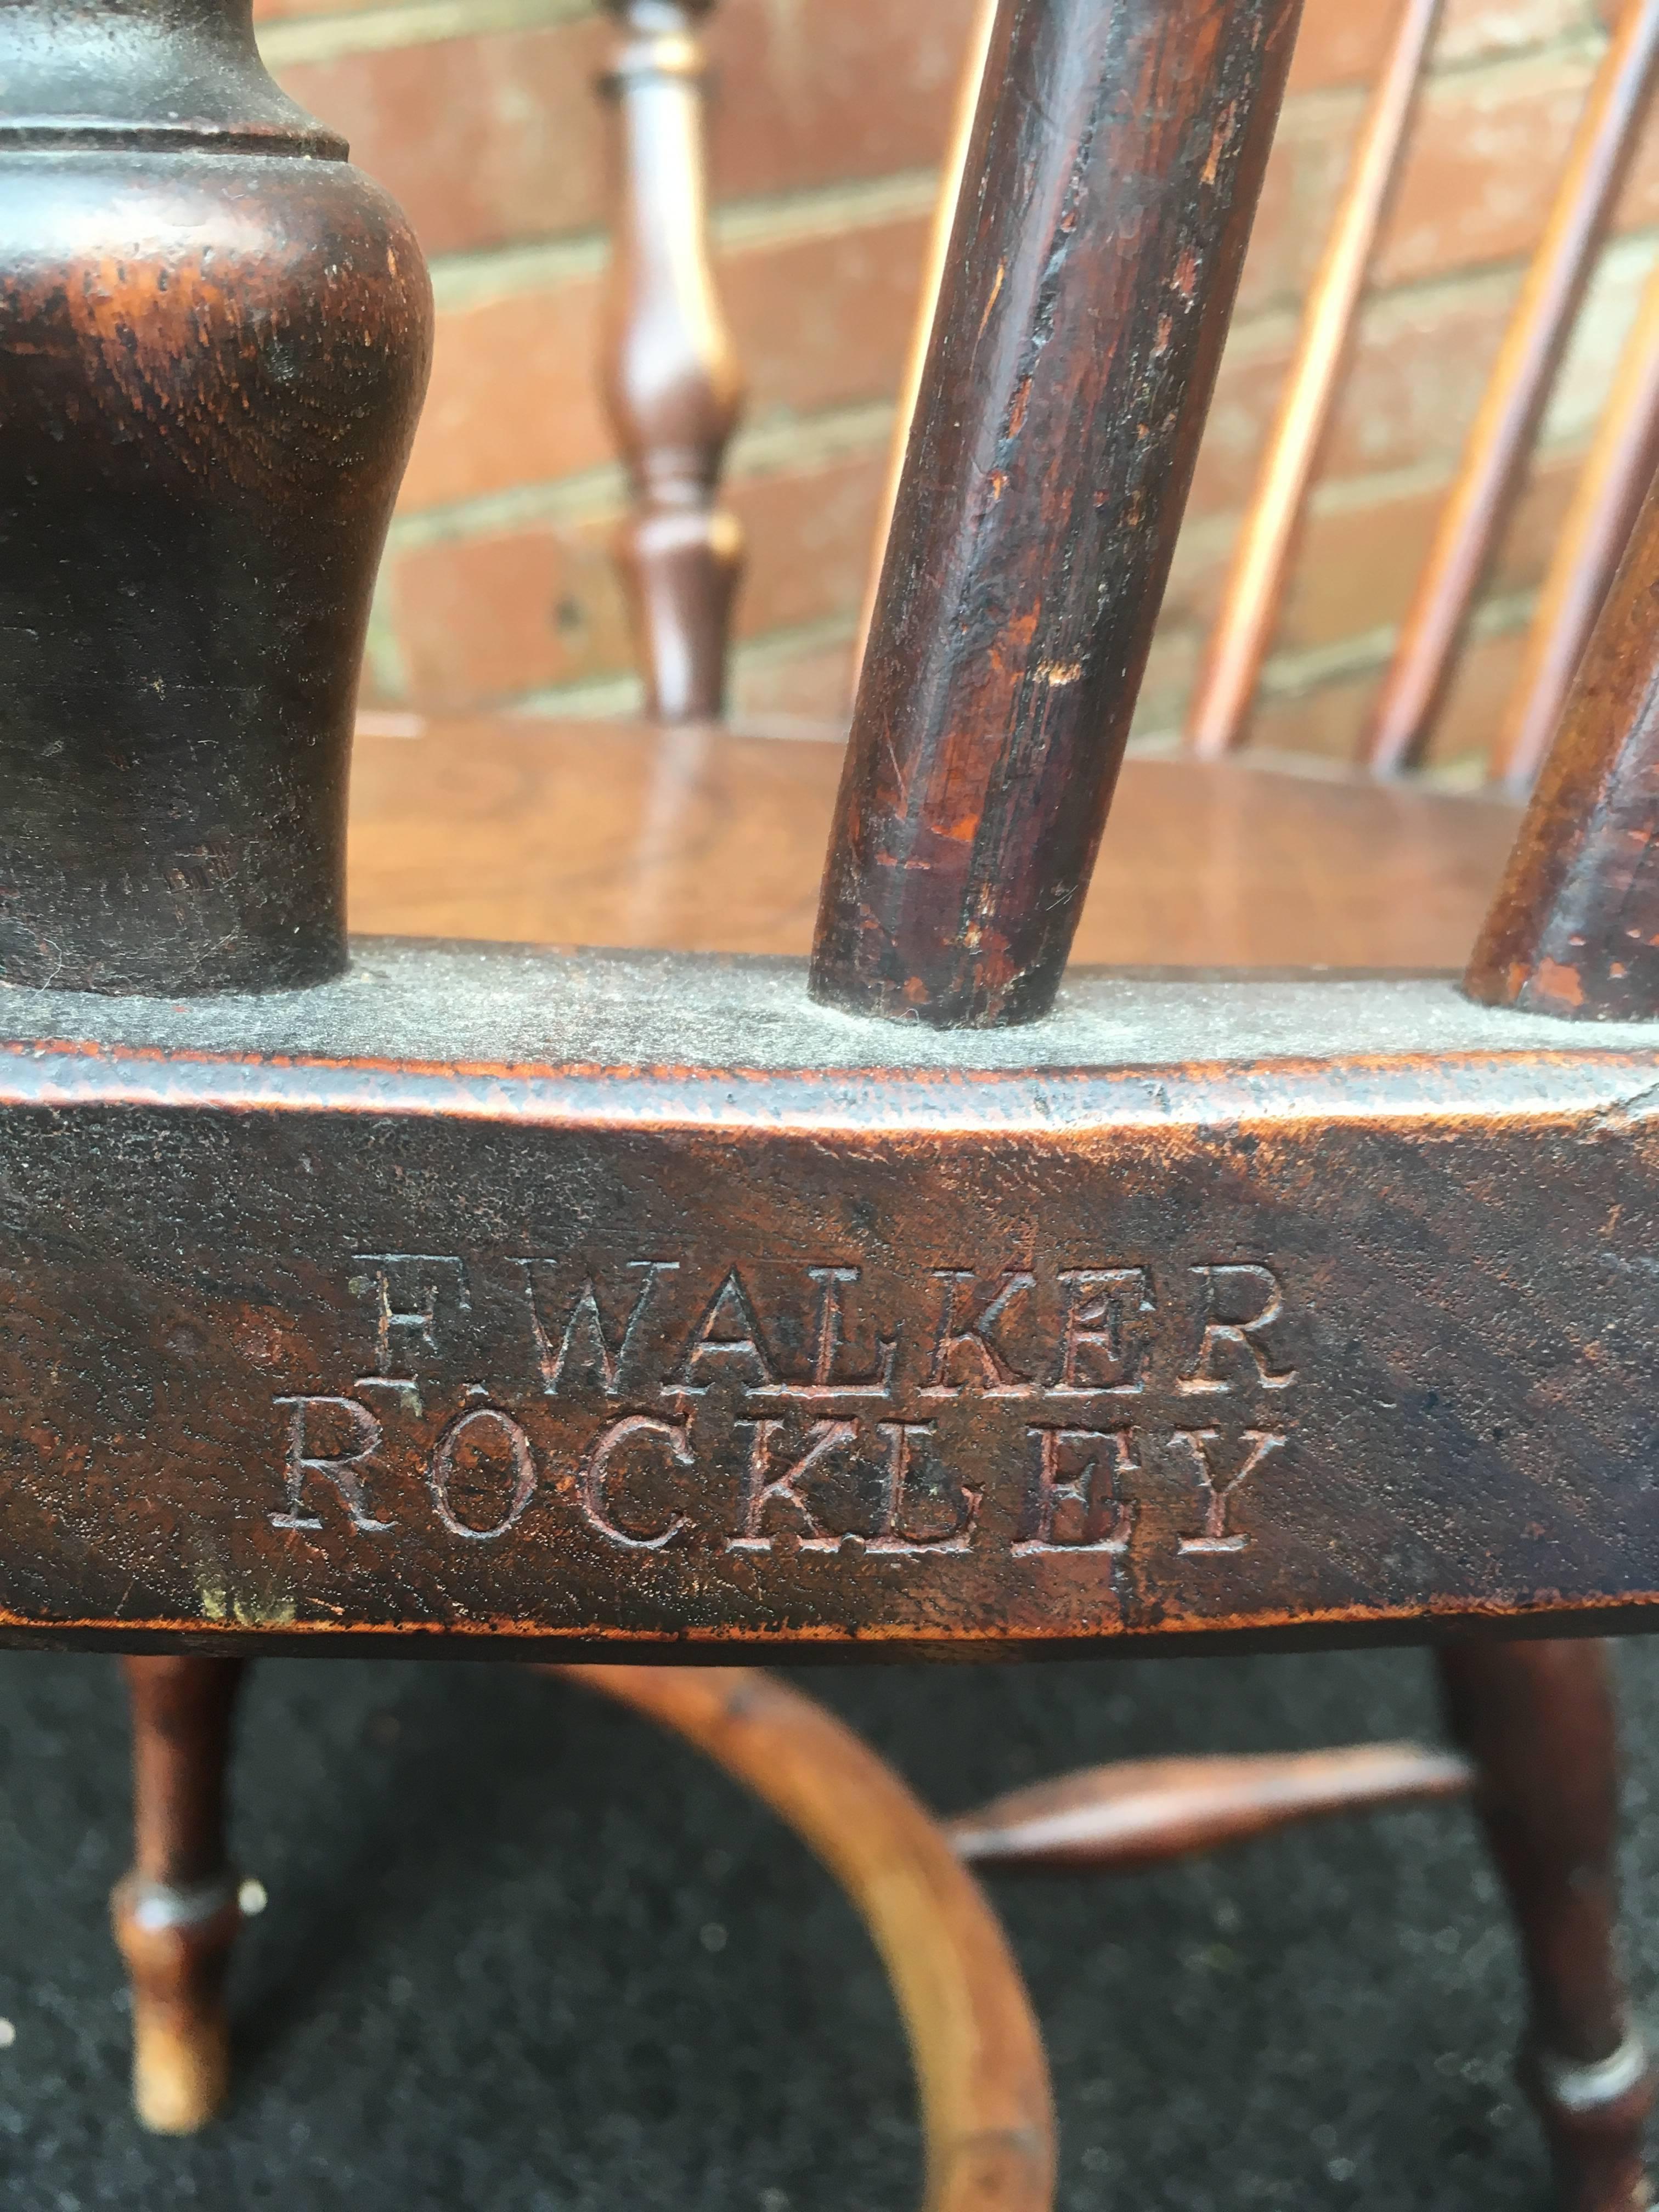 Elm Windsor Chair, Rockley Maker 4